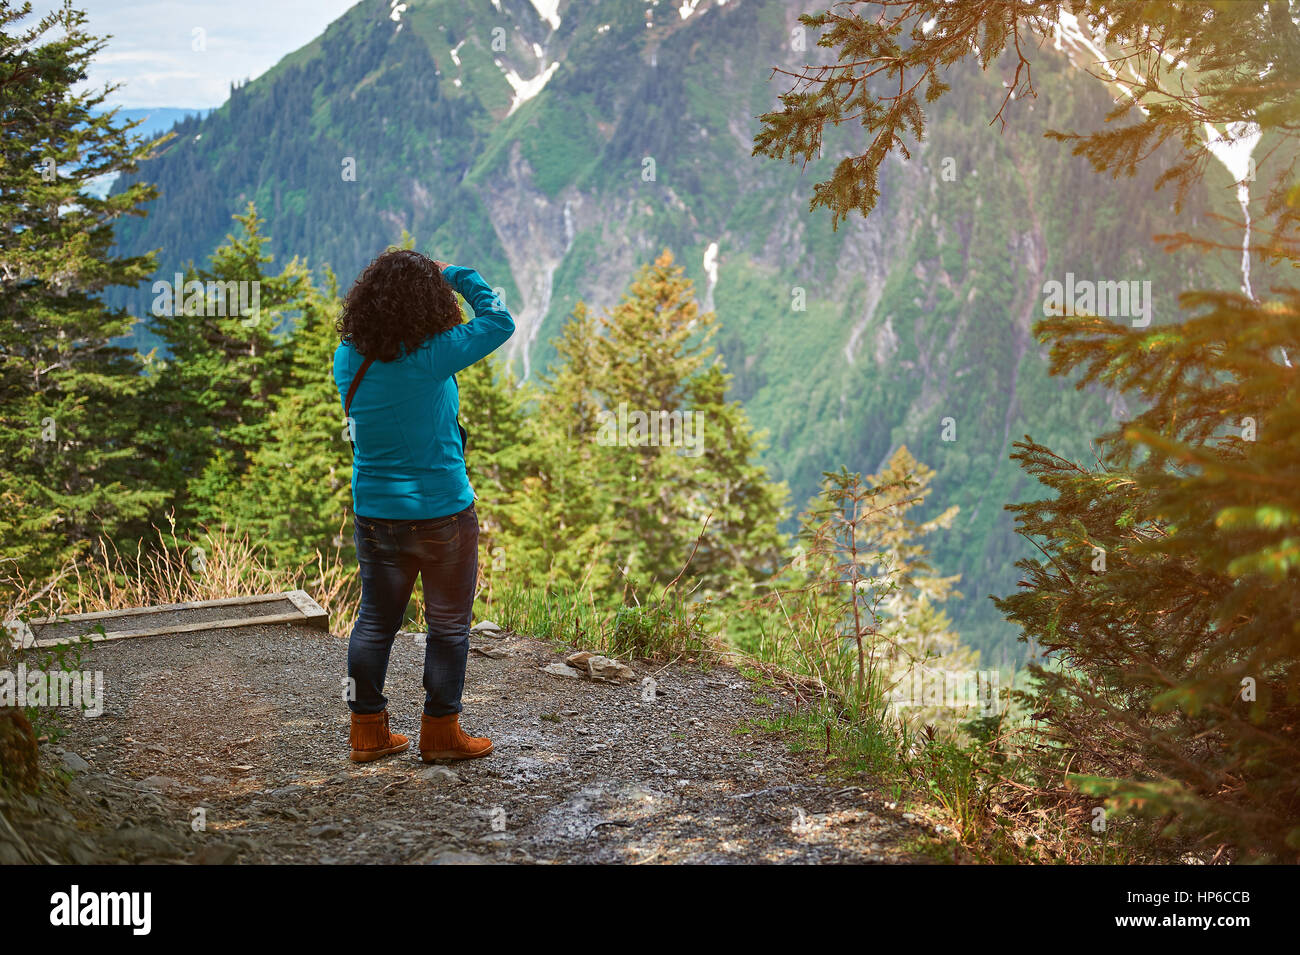 Prendre la photo photographe de voyage outddors dans paysage de montagne l'arrière-plan. Randonnée femme sur l'Alaska nature paysage Banque D'Images